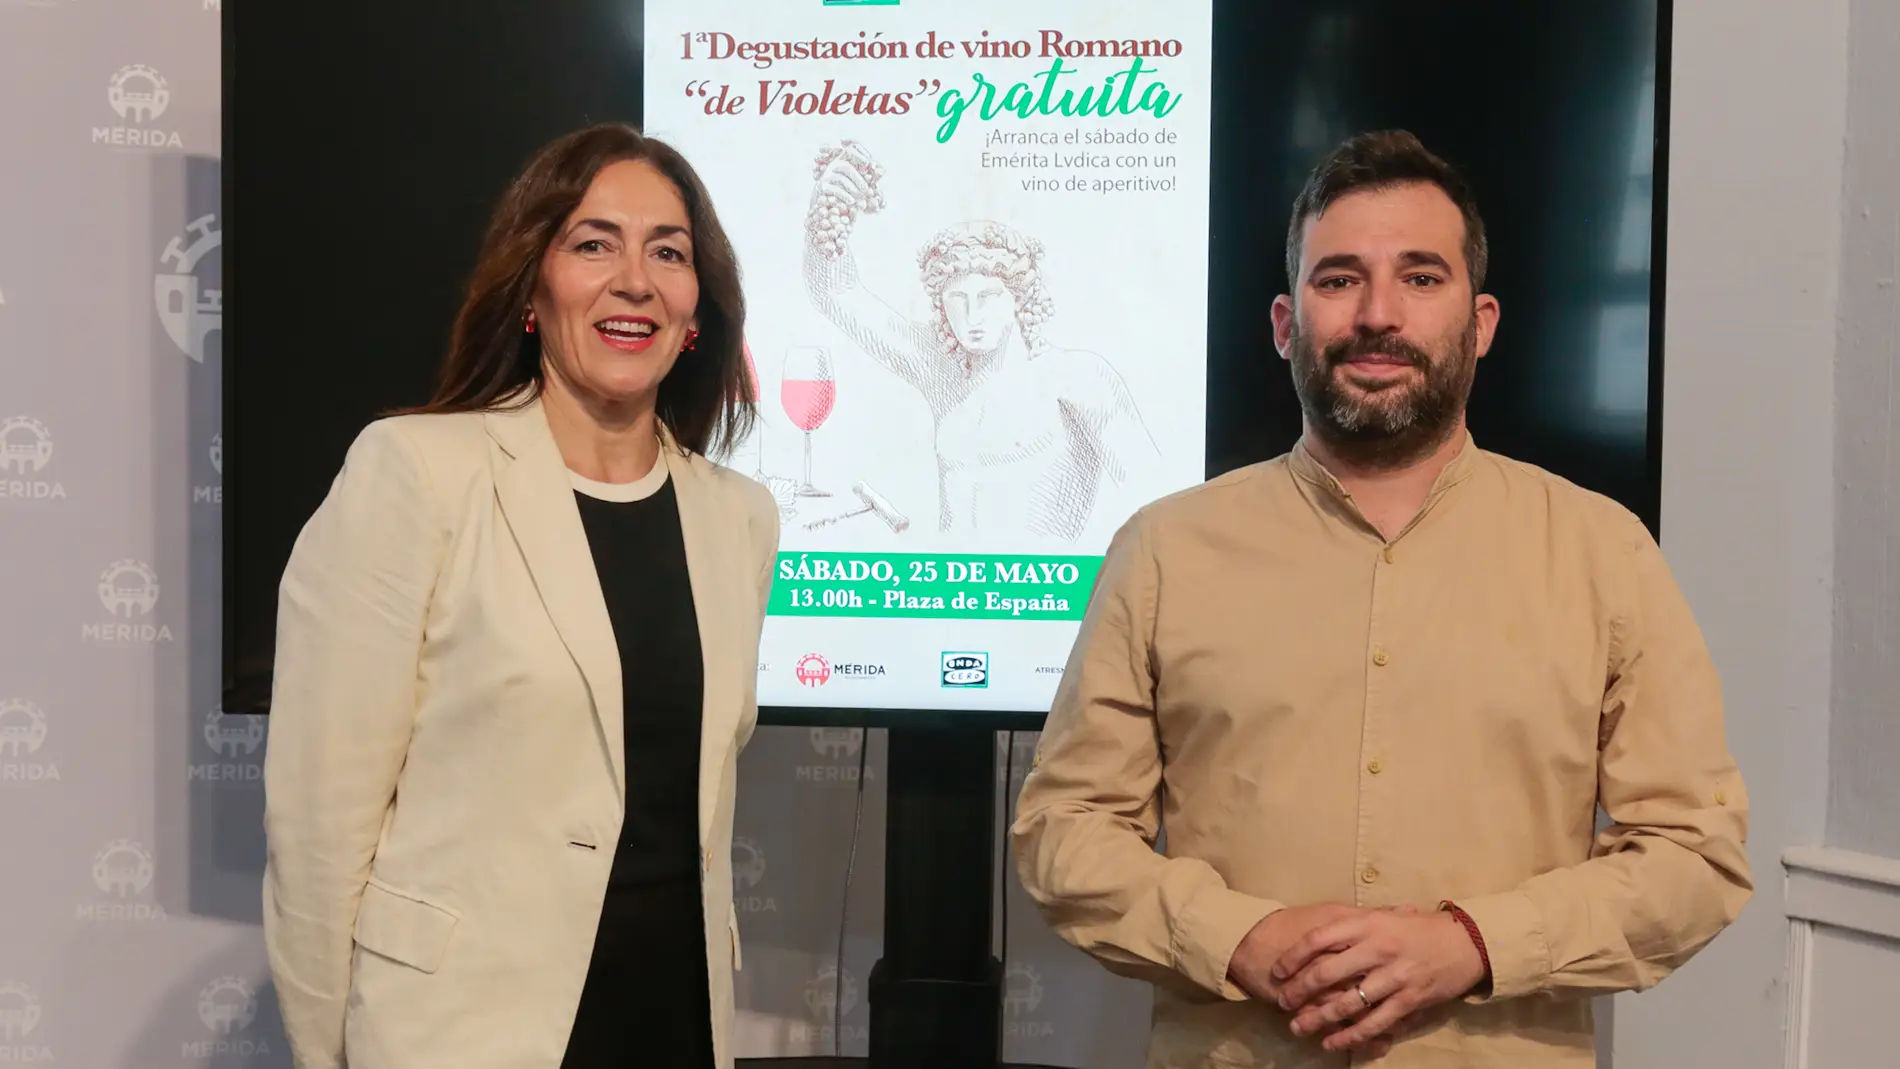 Onda Cero Mérida invita a la I Degustación de Vino Romano de Violetas este sábado en la Plaza de España